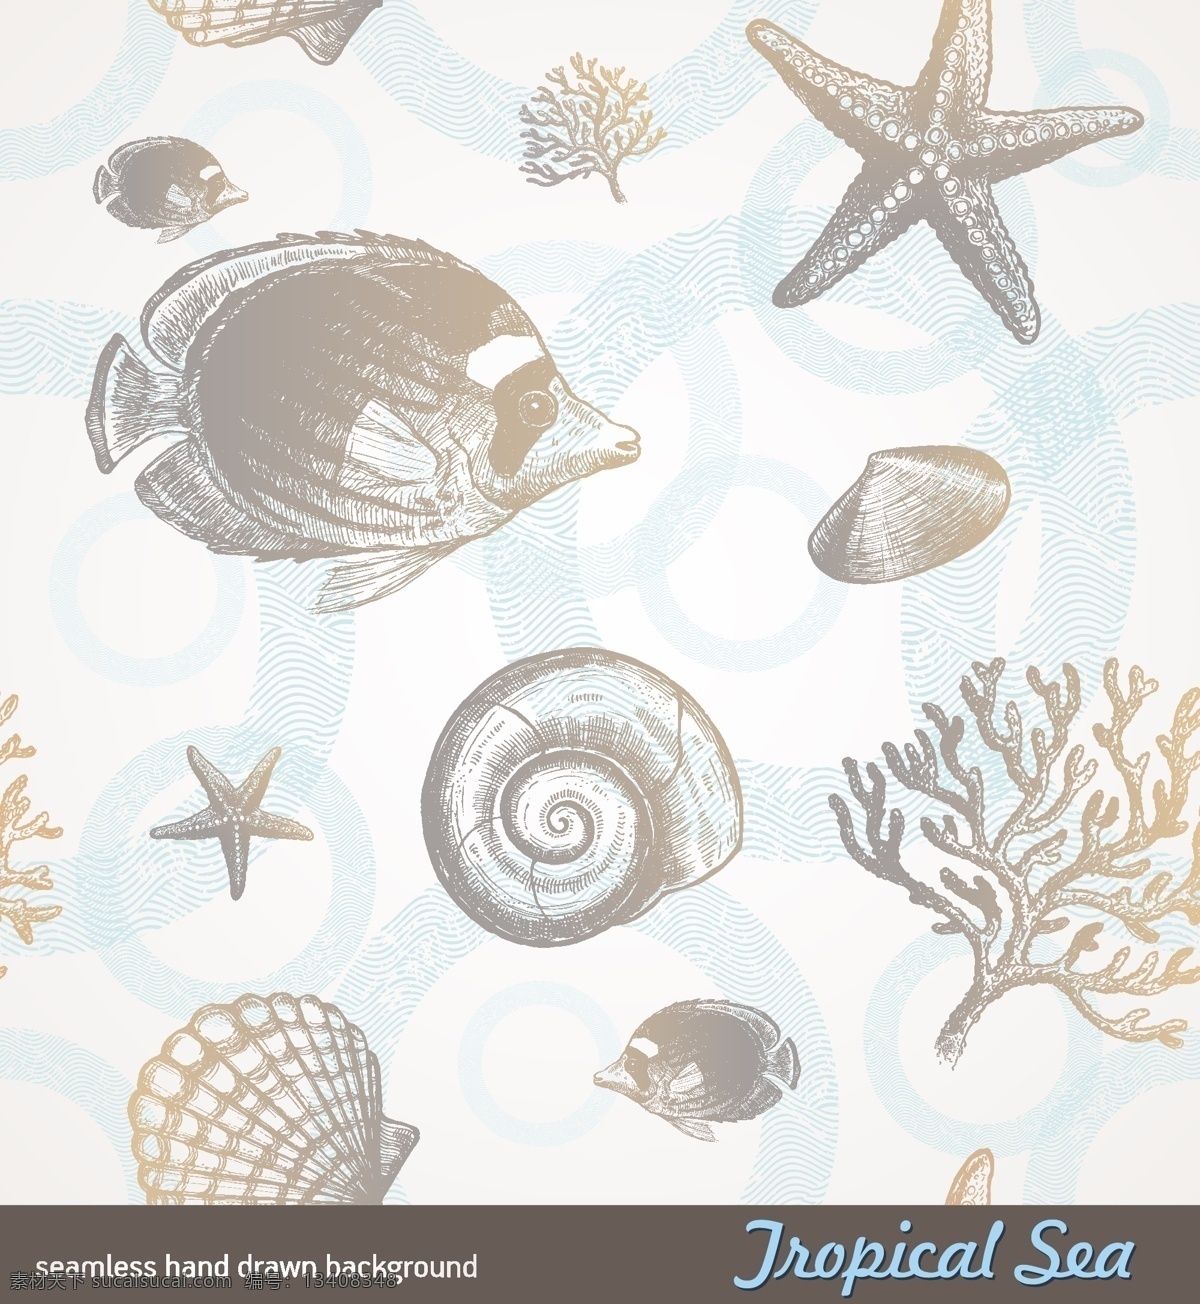 手绘 素描 海洋生物 热带鱼 海星 海螺 贝壳 牡蛎 珊瑚 动感 线条 底纹 背景 矢量素材 生物世界 矢量